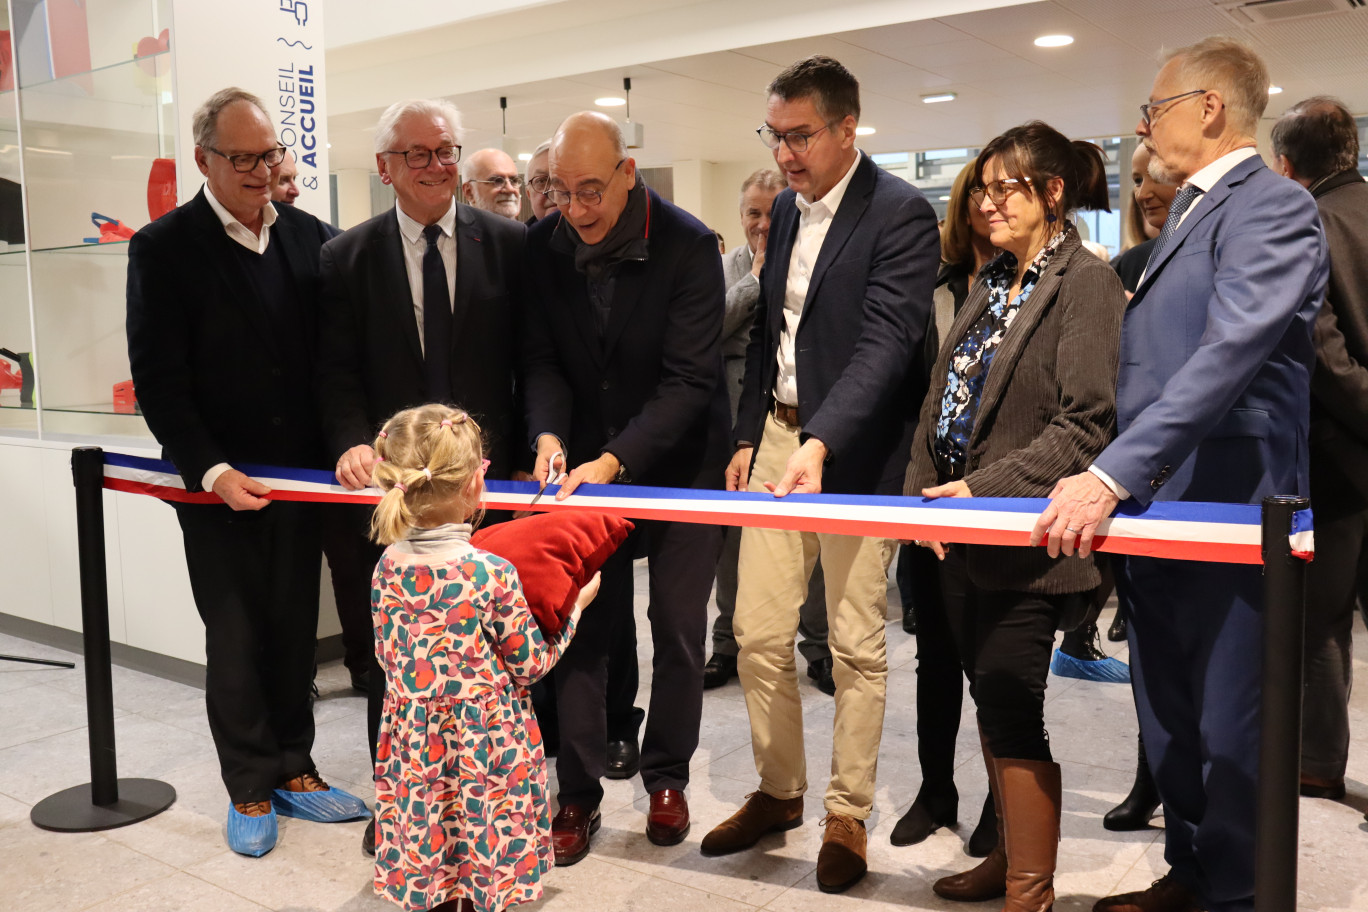 Les élus locaux étaient présents pour inaugurer le nouveau centre aquatique de Carvin, Aquaspot. Un investissement de 16,8 millions d’euros cofinancé par 6 partenaires. © Aletheia Press/E.Chombart